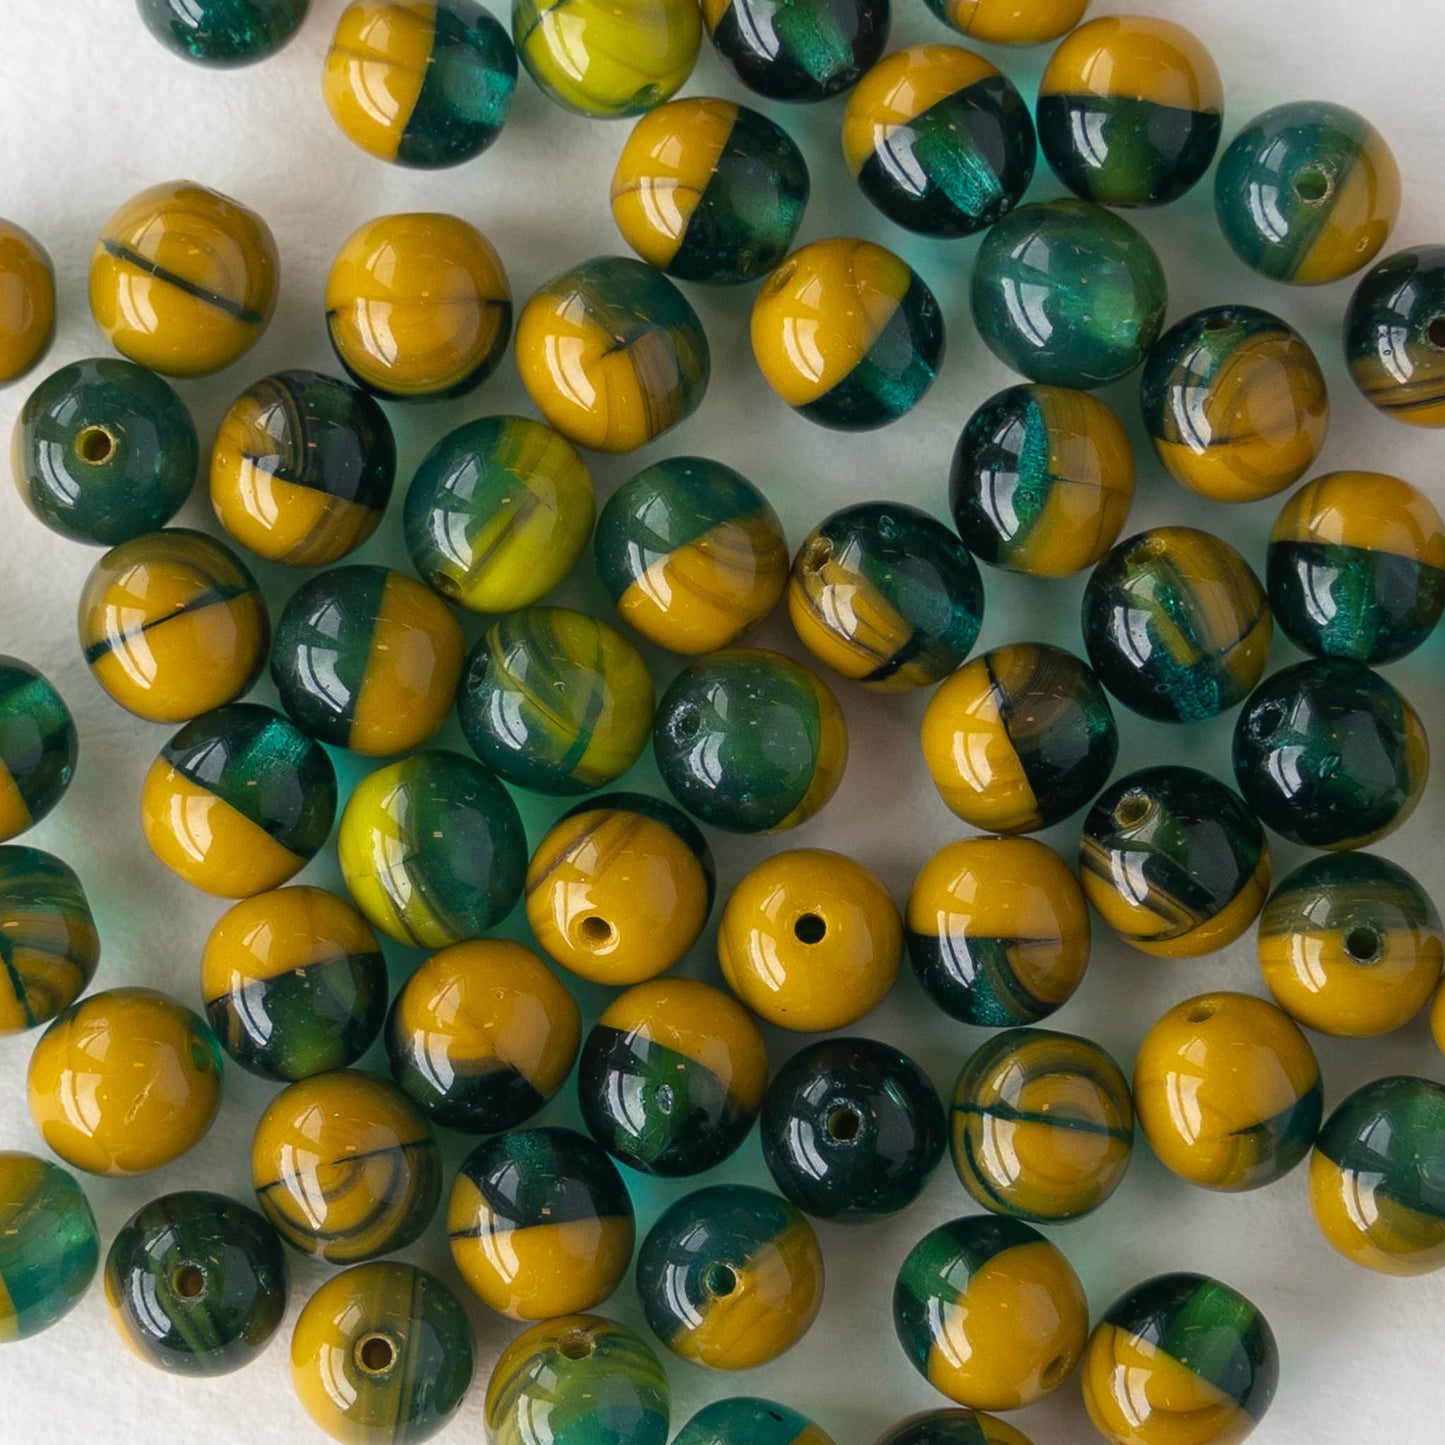 6mm Round Glass Beads - Green Ochre Mix - 50 Beads